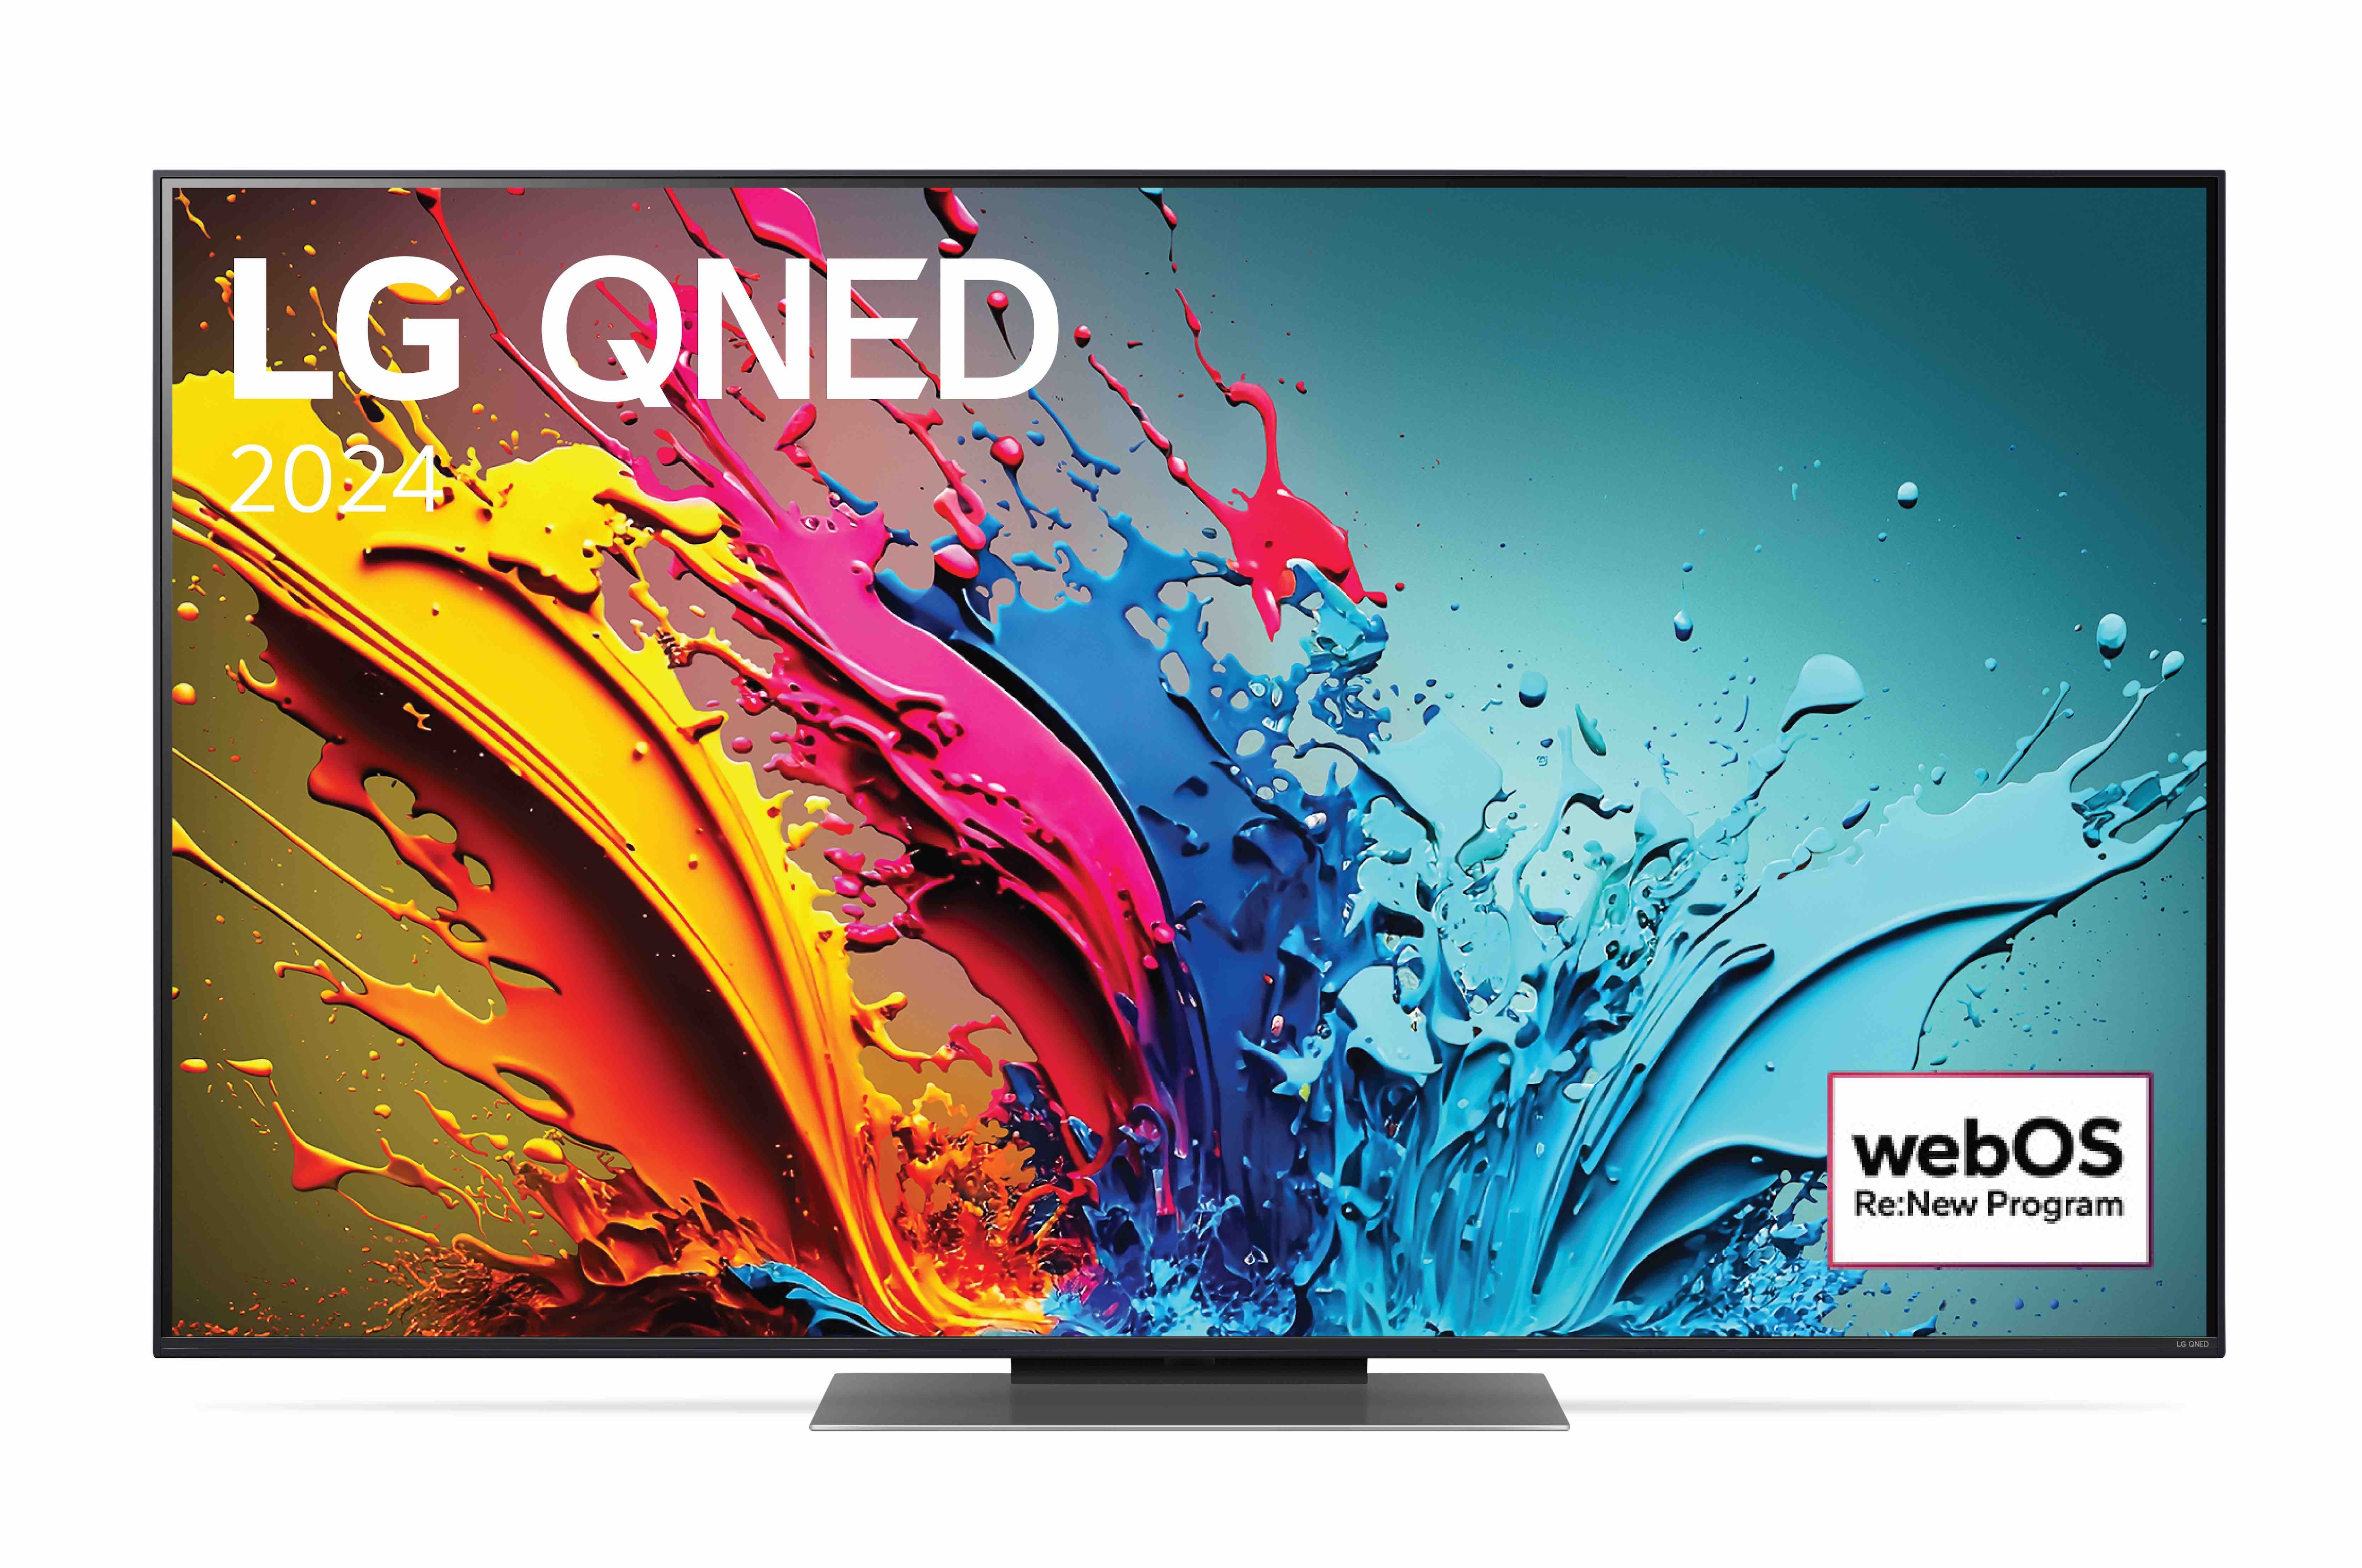 LG TV LG QNED 55 inch 55QNED86TSA, Mặt trước của TV LG QNED, QNED86 với dòng chữ của LG QNED MiniLED, 2024 và logo webOS Re:New Program trên màn hình, 55QNED86TSA